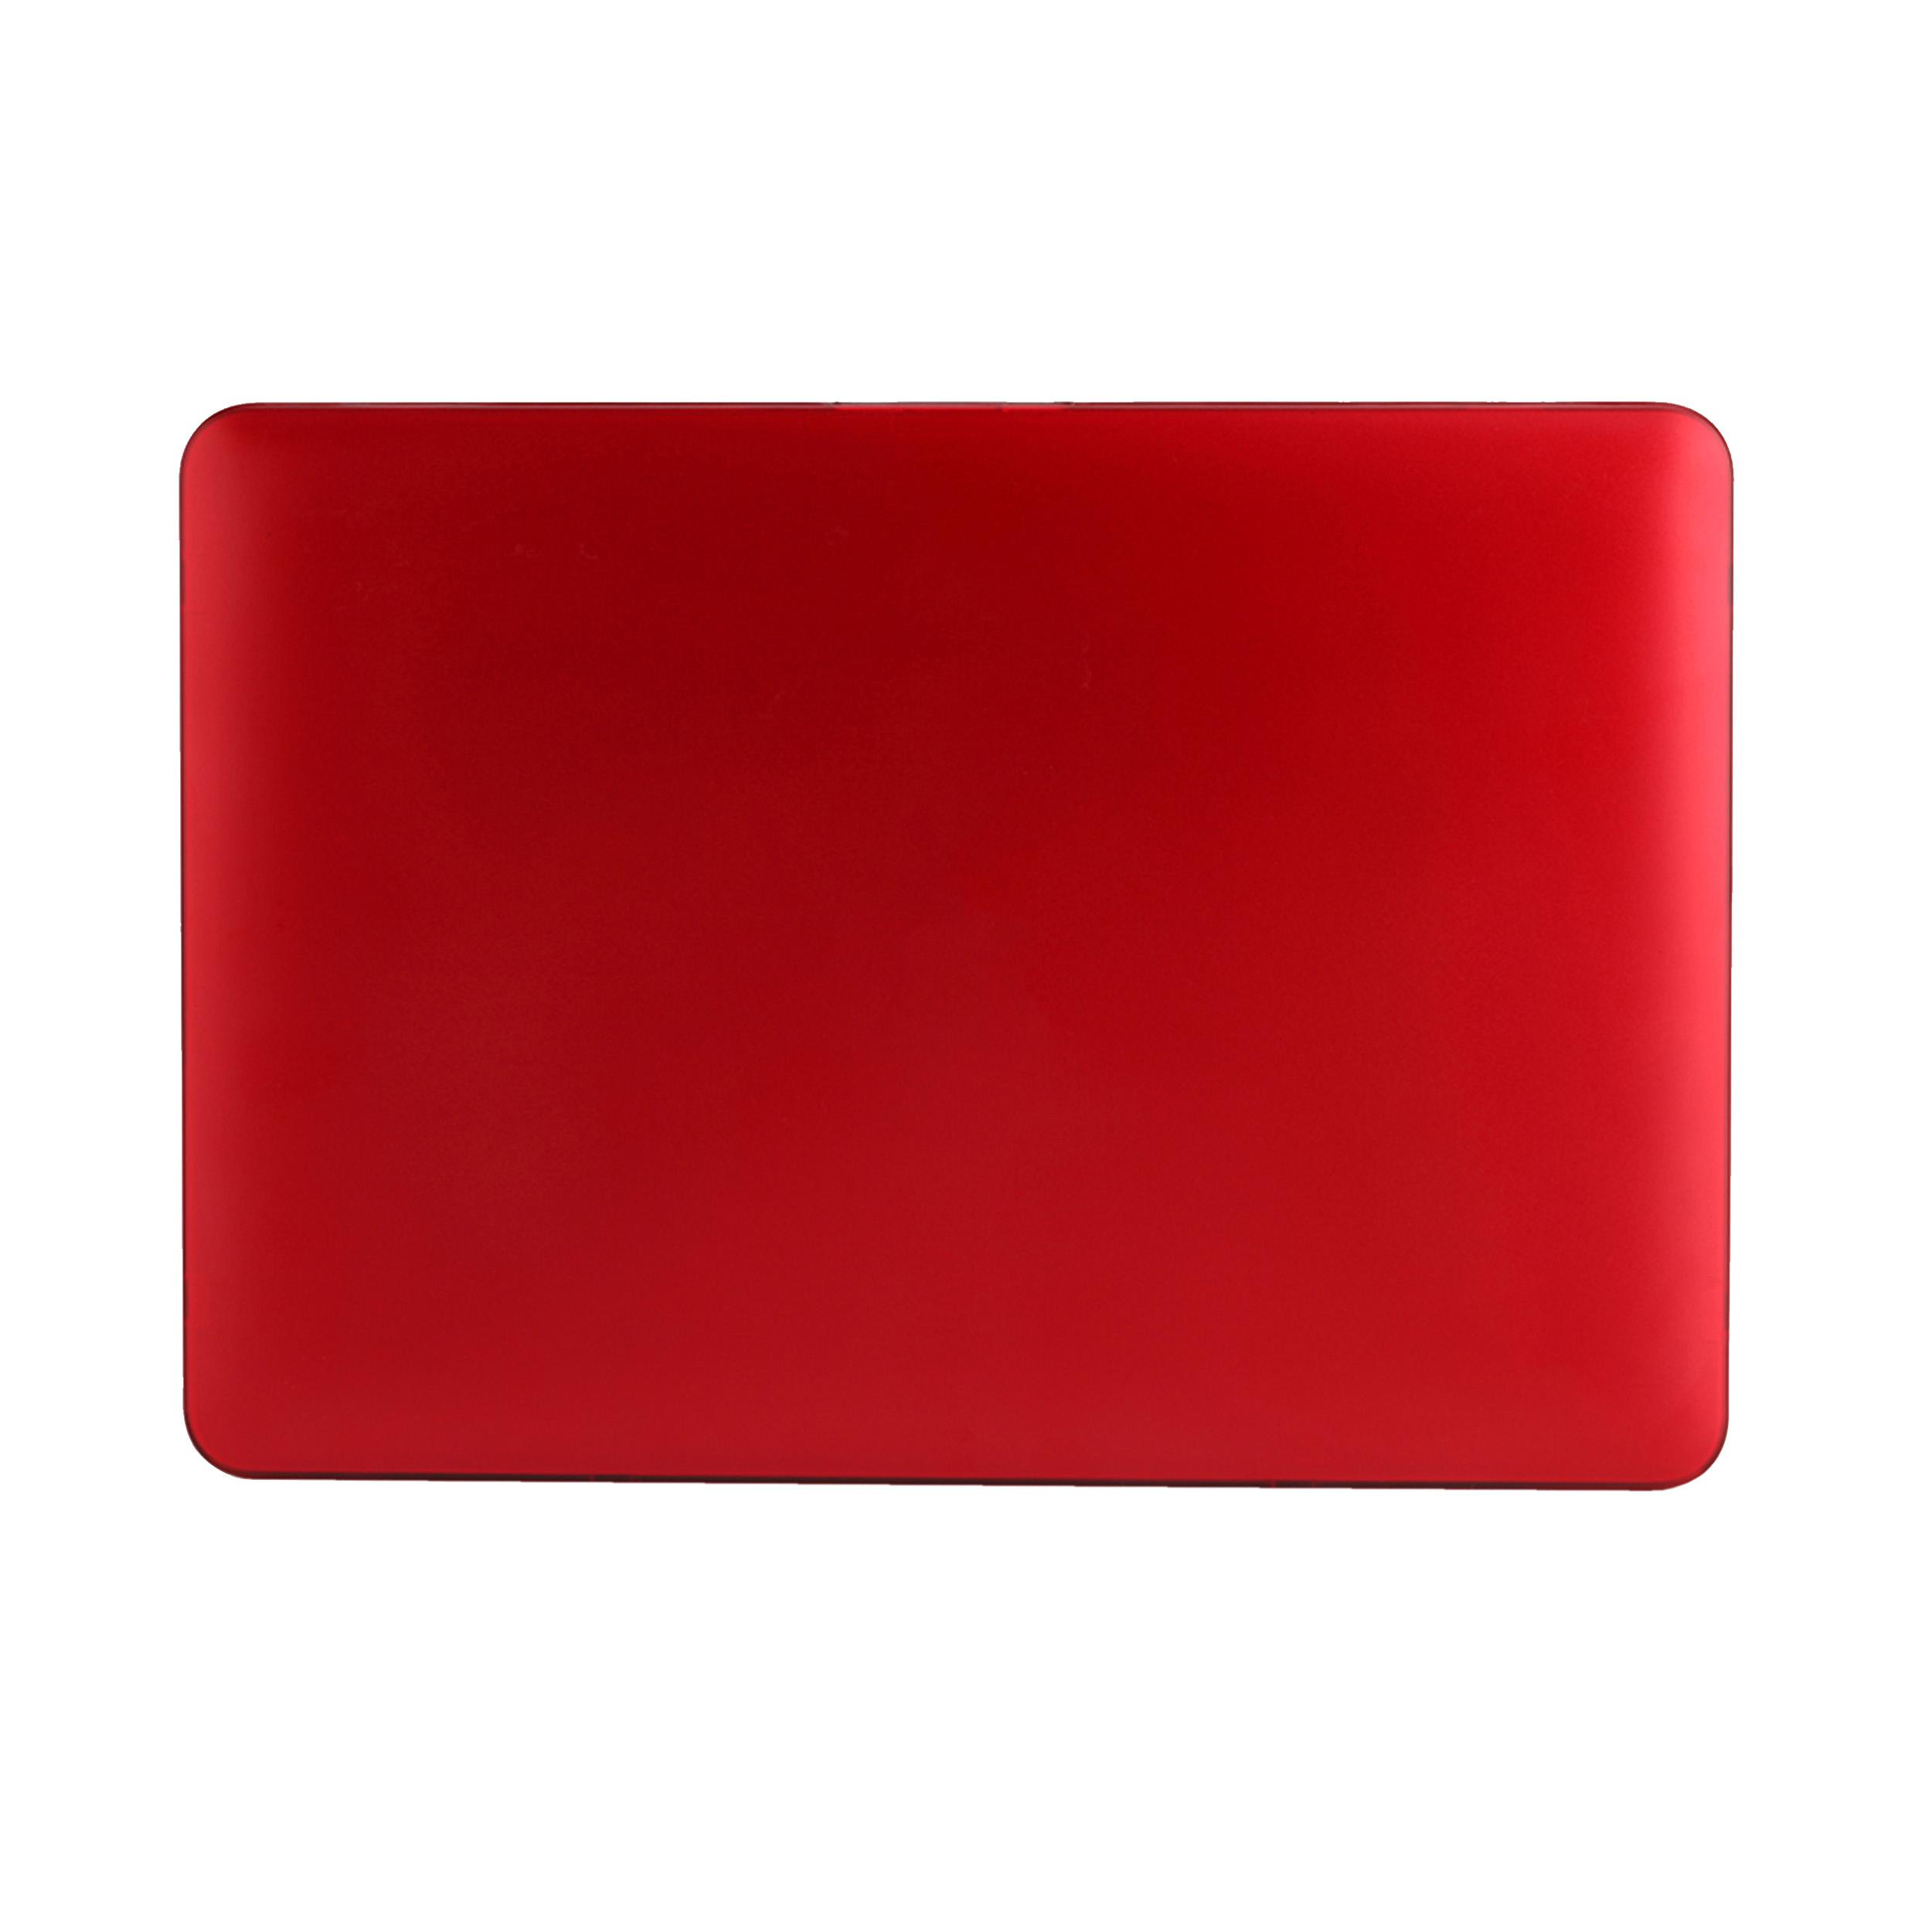 PC, red für Full Premium Retina MacBook KMP 15\